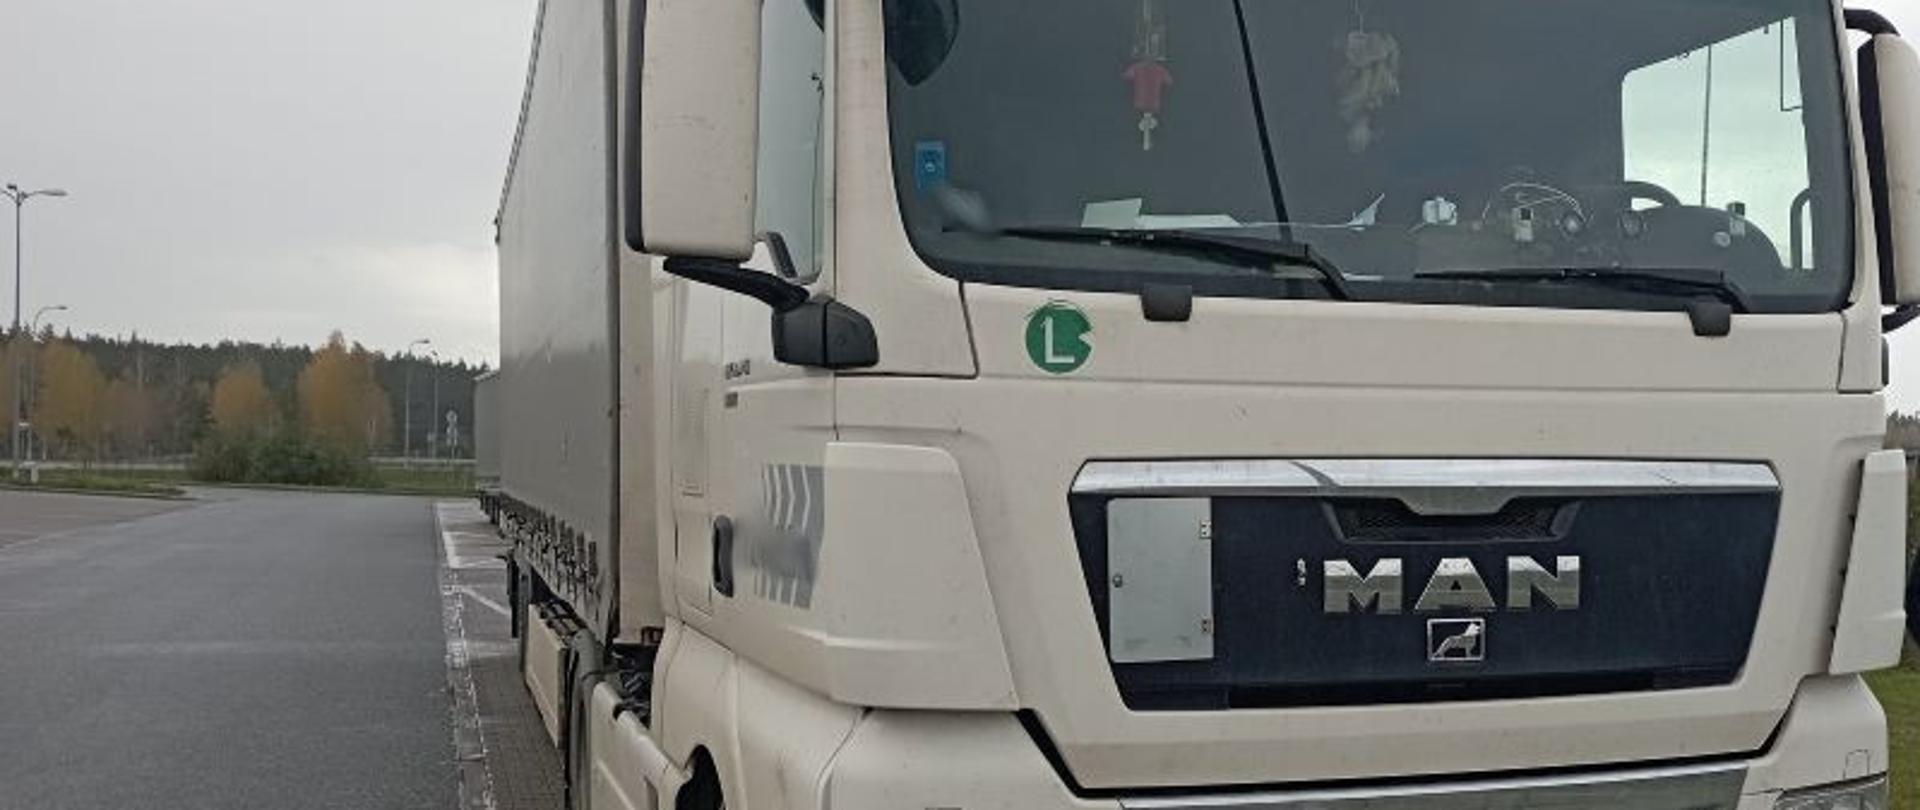 Widok kontrolowanej zagranicznej ciężarówki